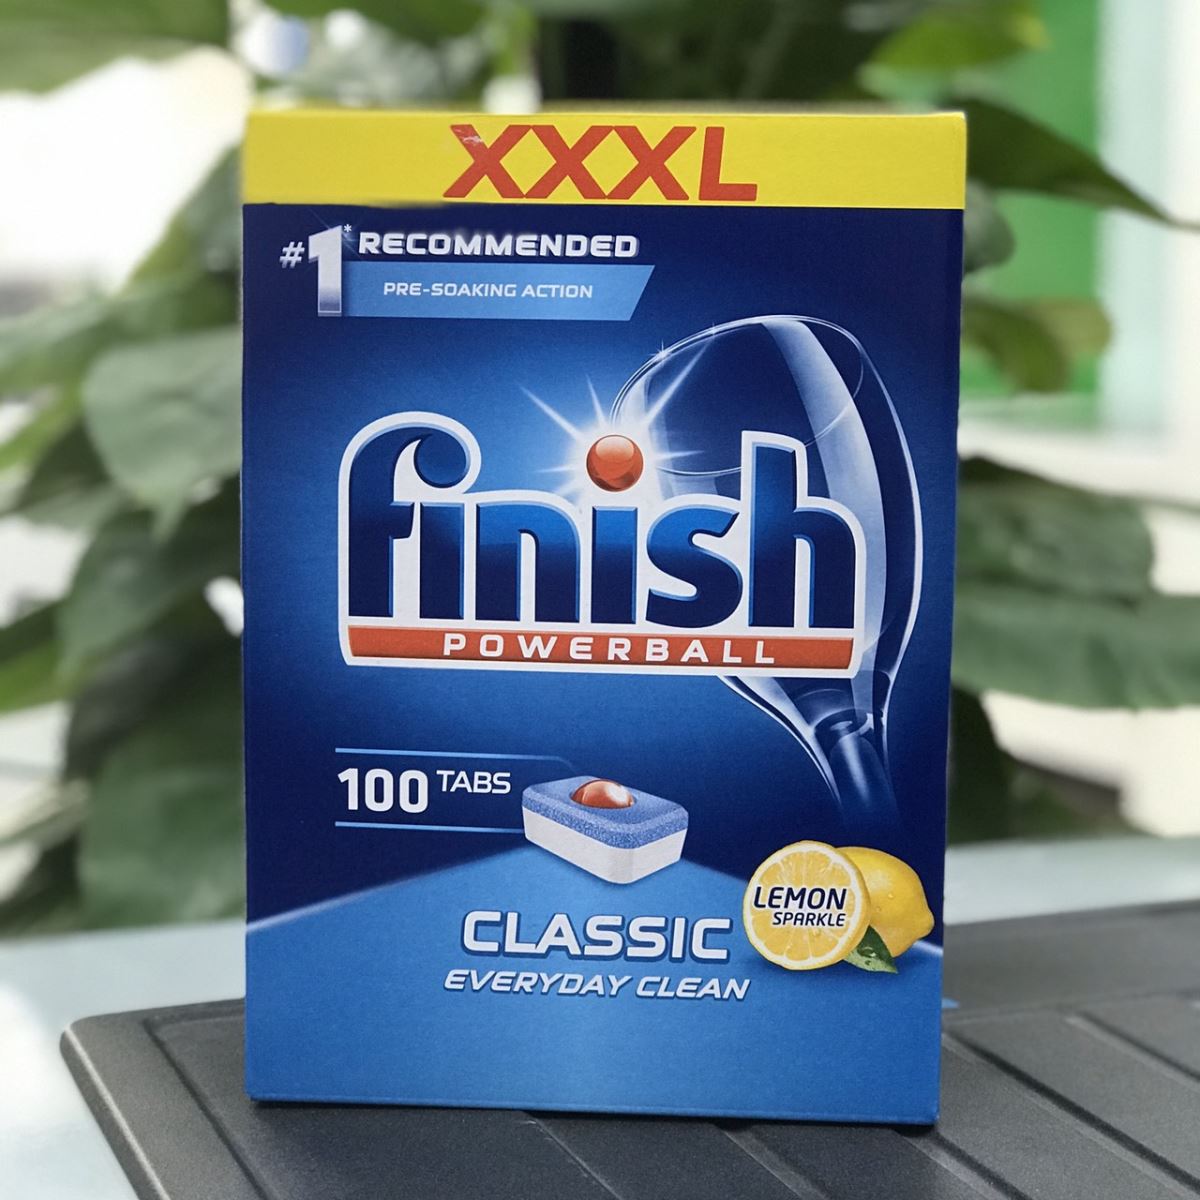 Viên rửa bát Finish Classic 100 viên/ hộp - Hương Chanh, Nhập khẩu EU